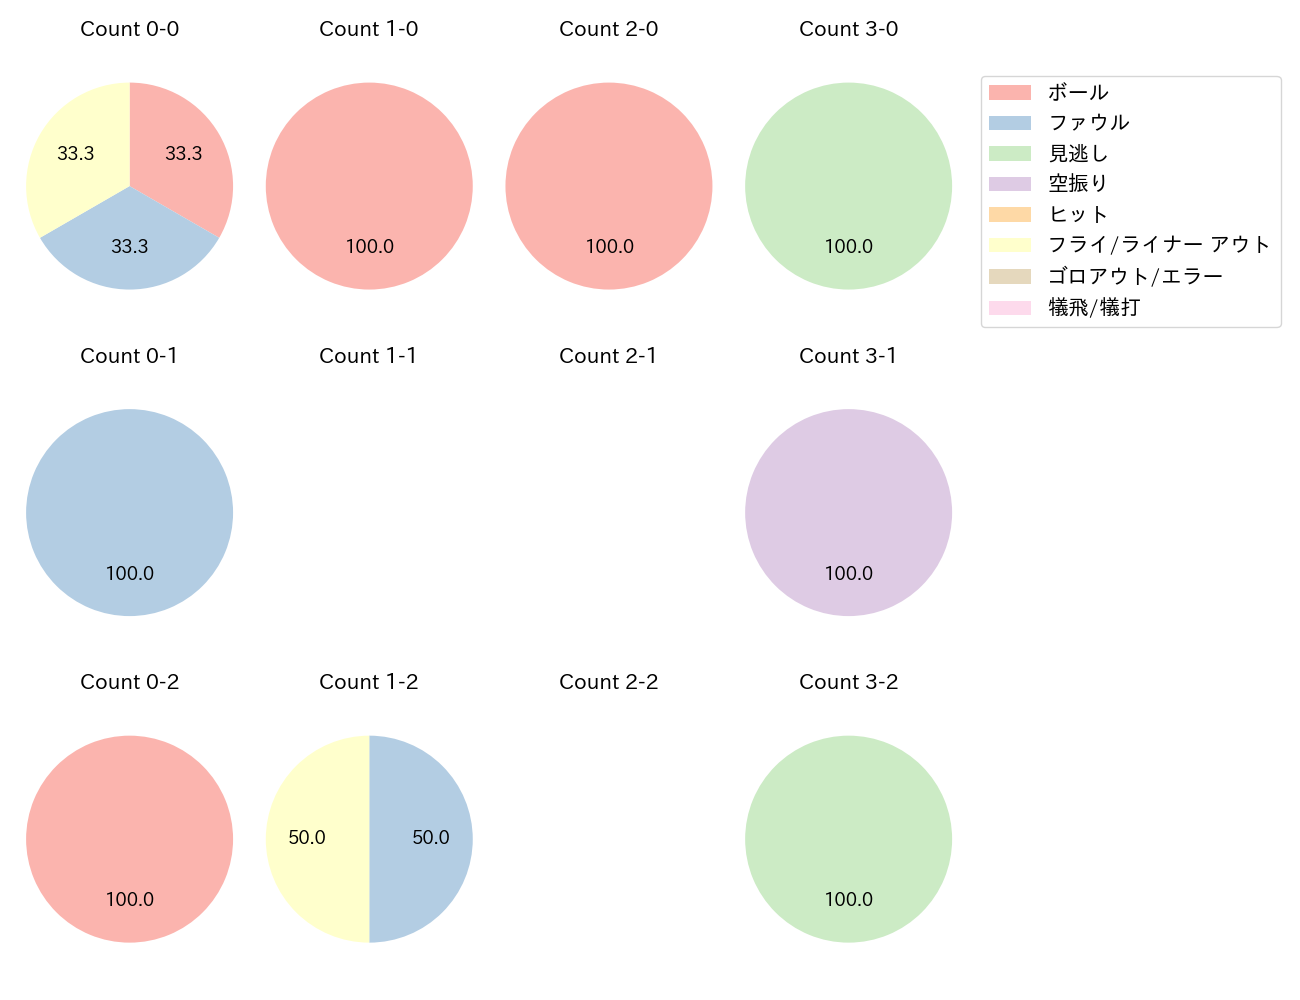 吉田 裕太の球数分布(2021年4月)